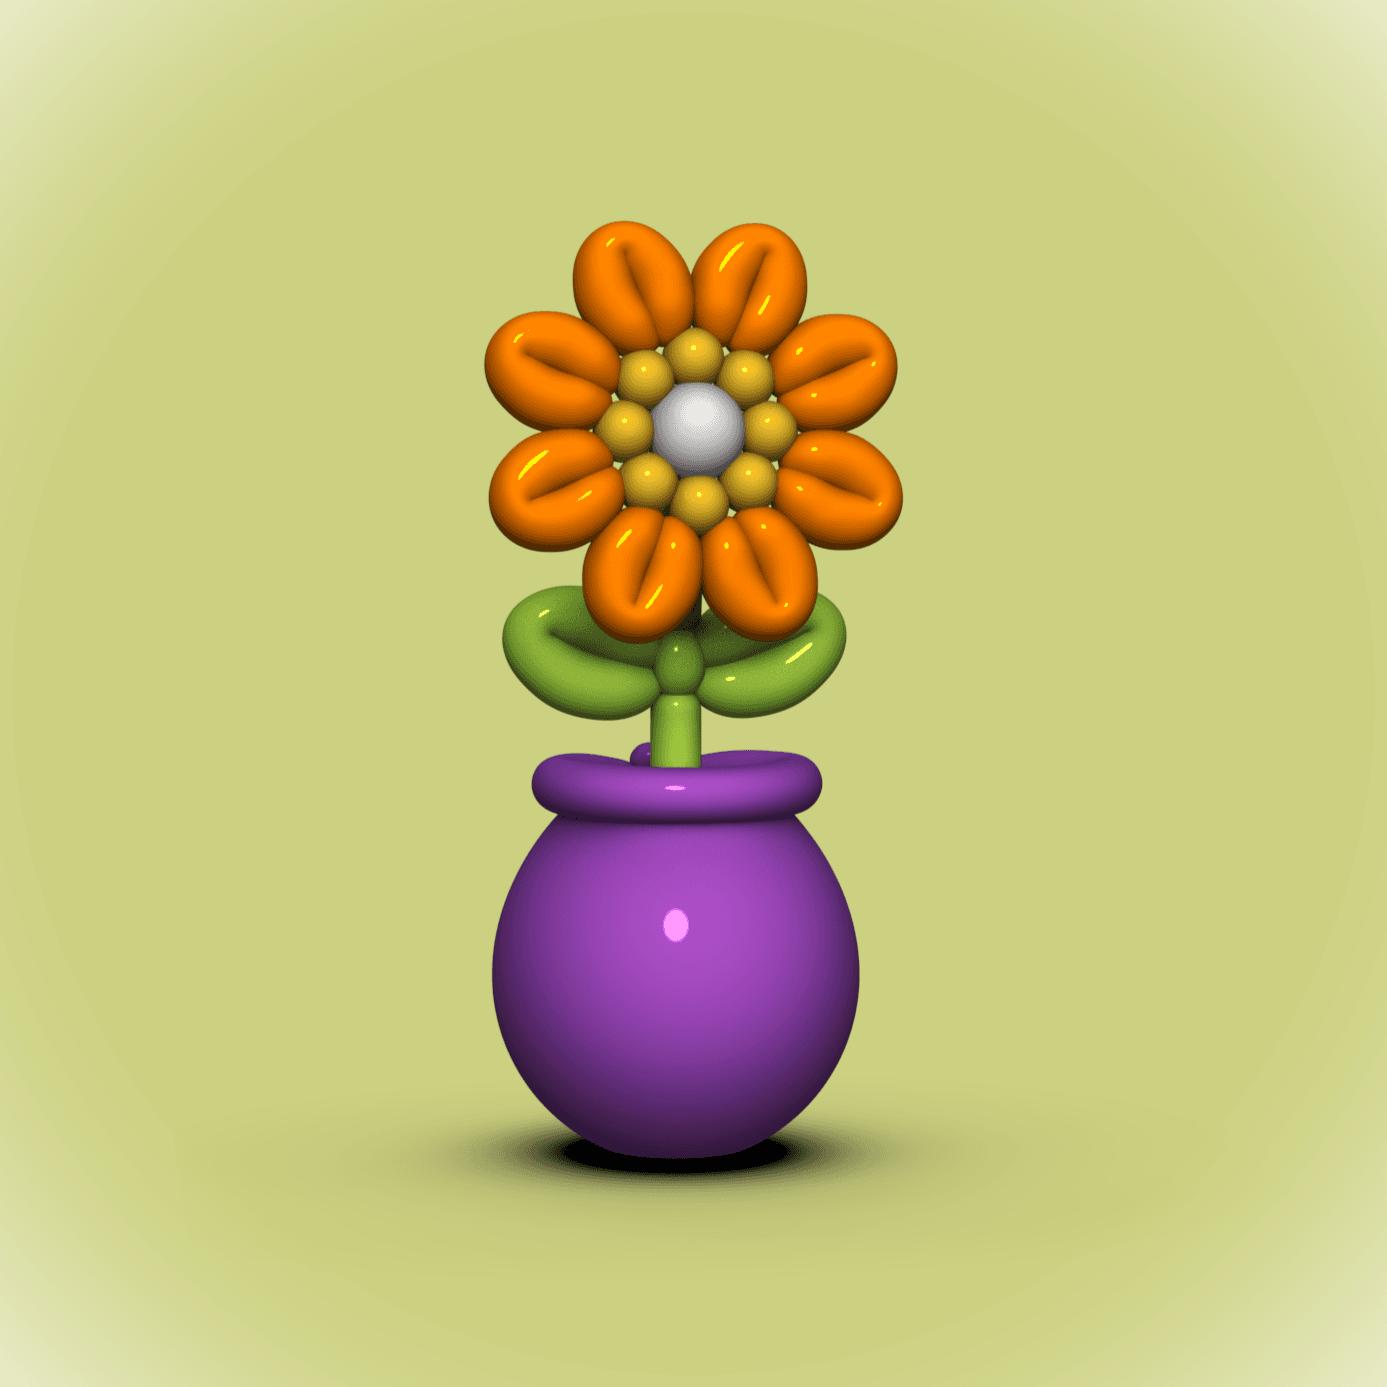 Balloon Flower in Pot  3d model